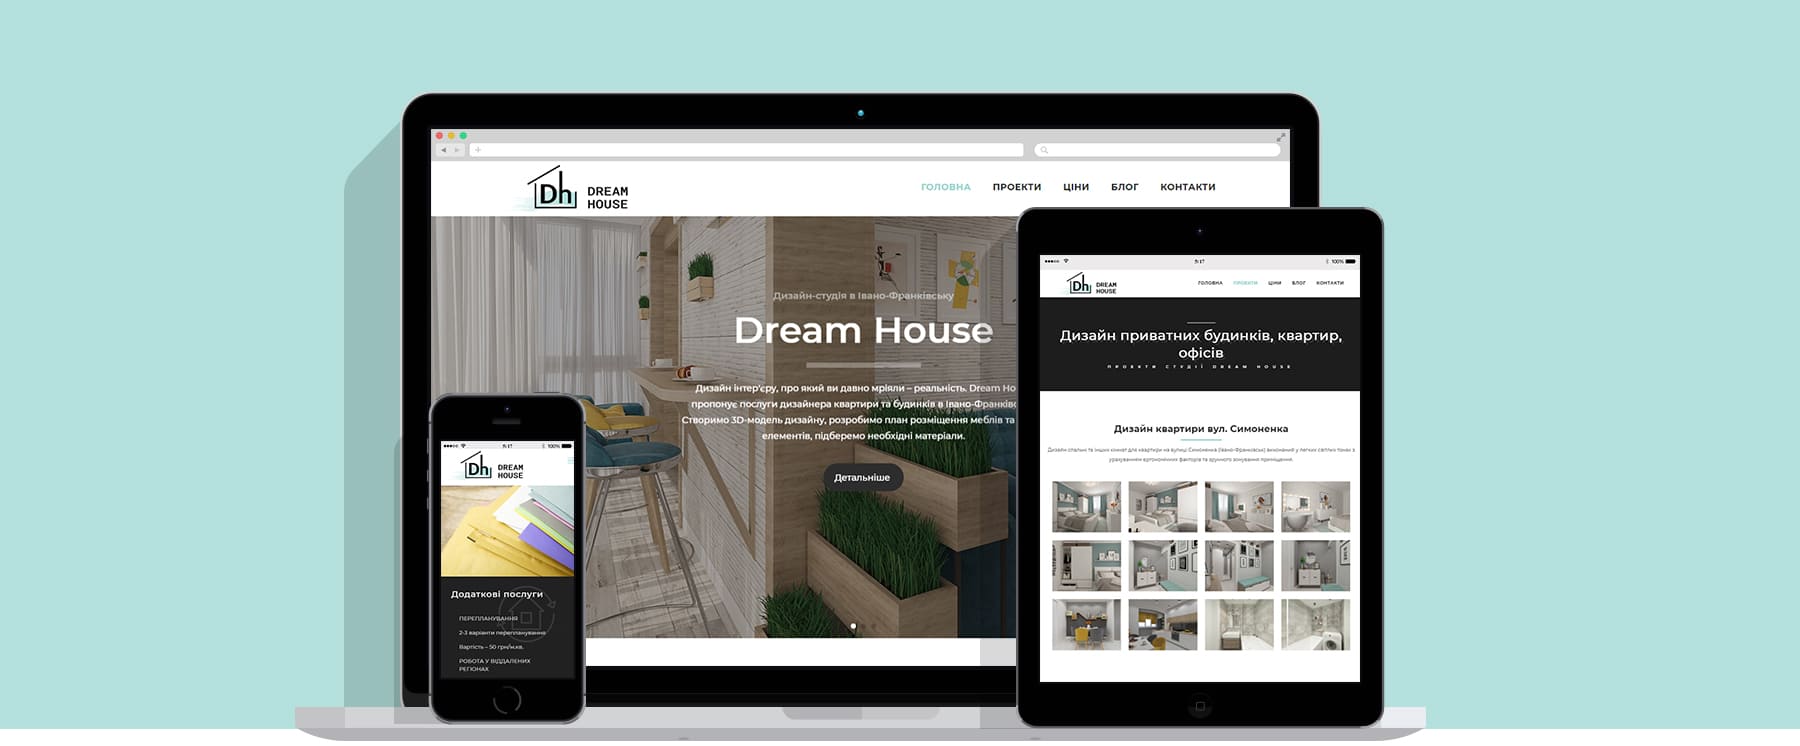 Створення сайту для дизайнерів інтер'єру Dream House